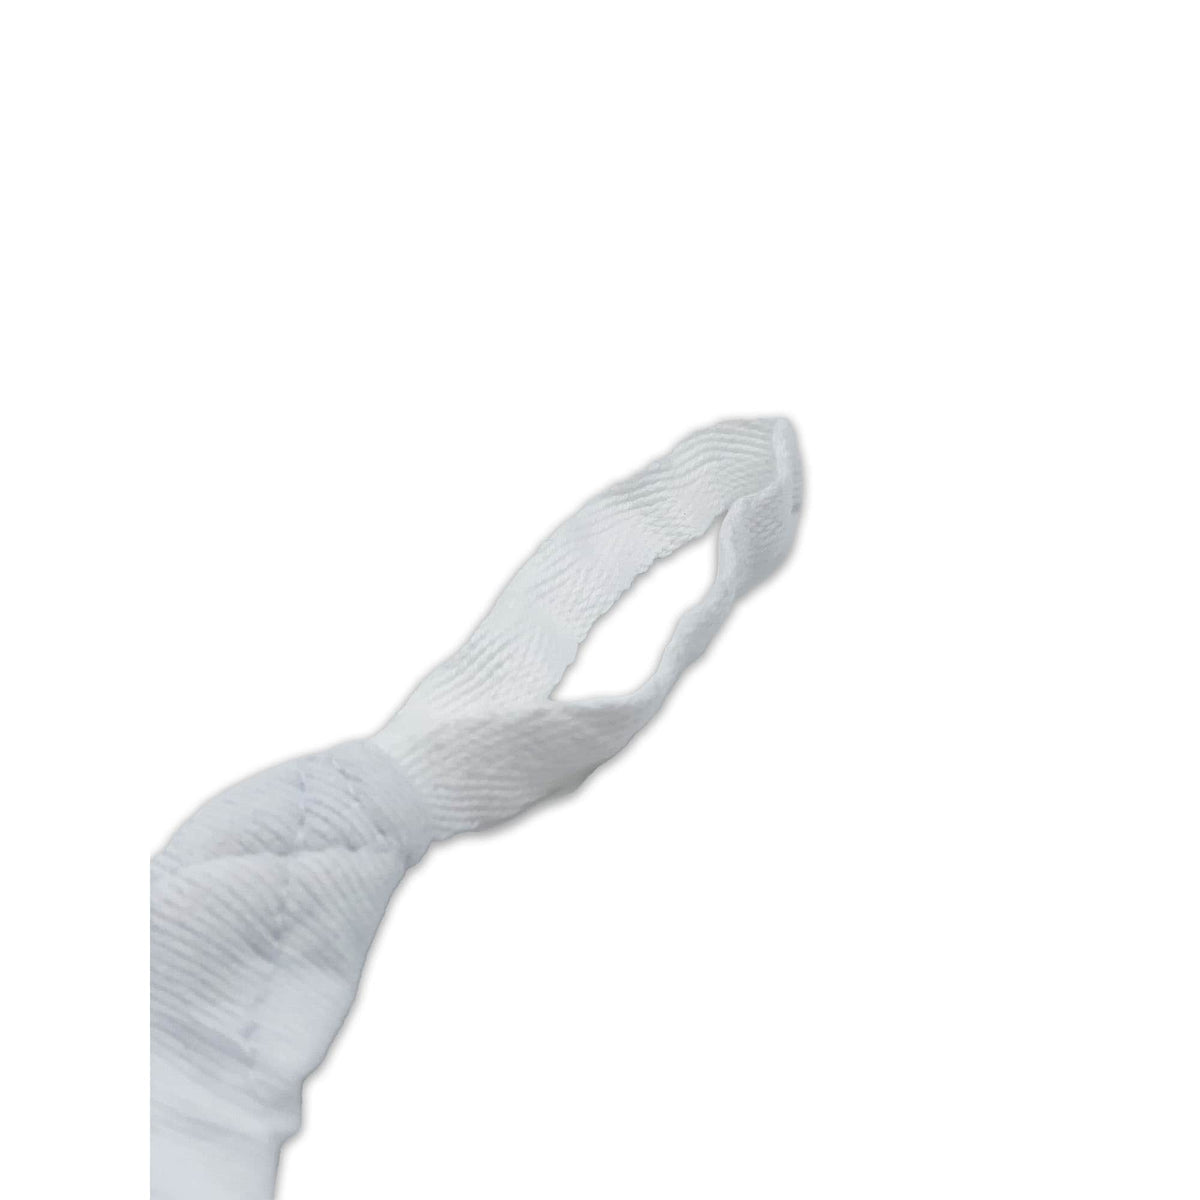 Nahaufnahme der Daumenschlaufe an der weißen Boxbandage, hervorgehoben durch ihr präzises Design für zusätzlichen Halt und einfaches Anlegen. Die Schlaufe gewährleistet eine sichere Positionierung der Bandage um Hand und Handgelenk für optimalen Schutz beim Training.